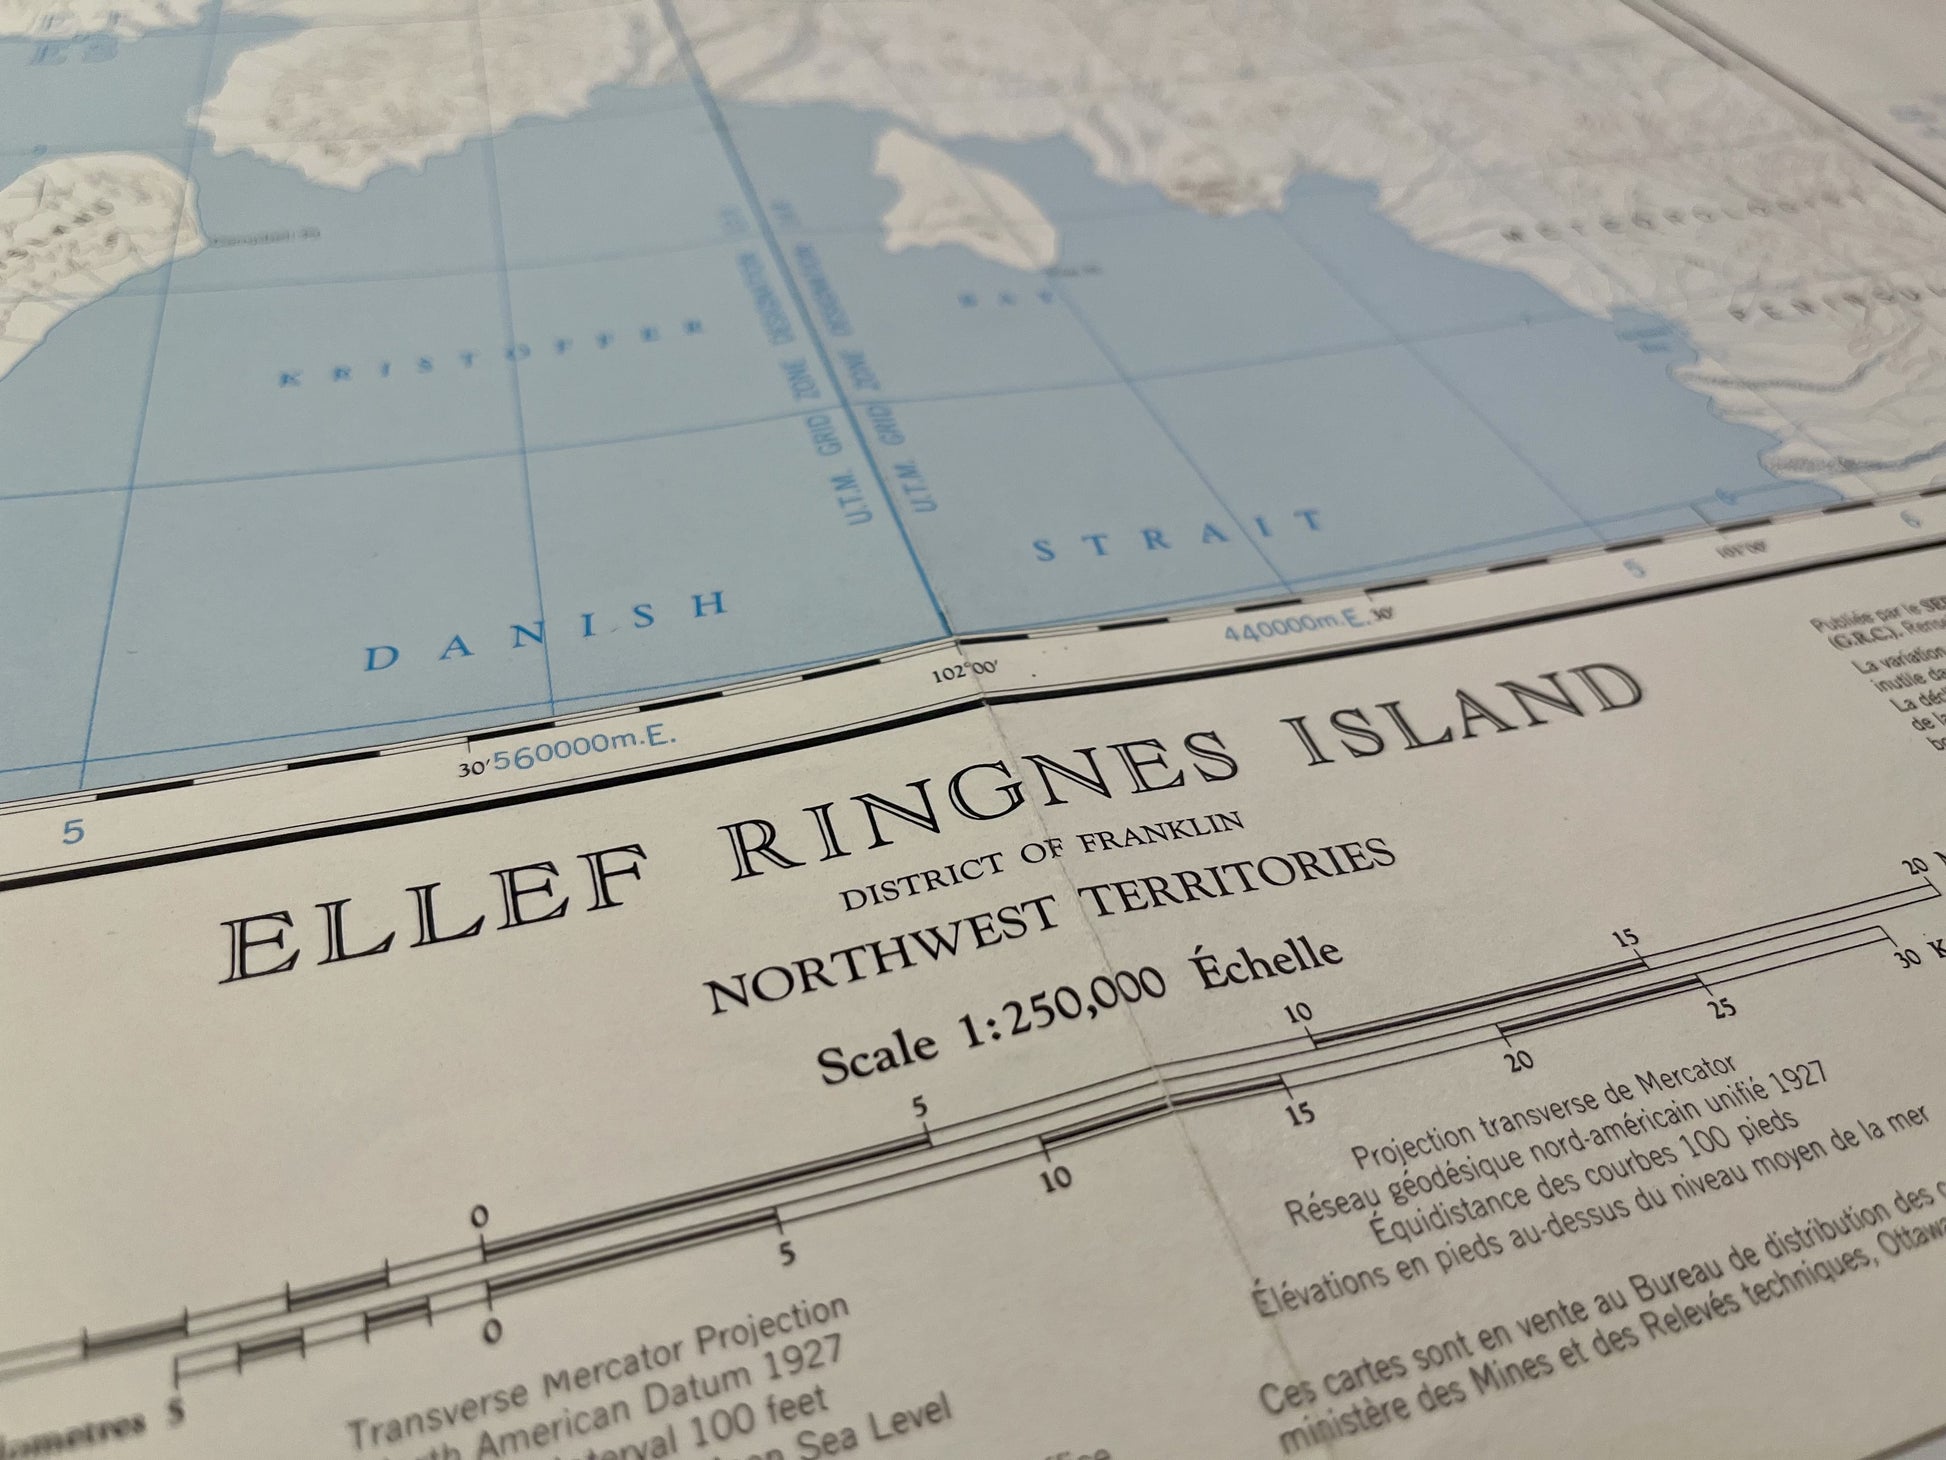 Décoration carte ancienne de l'Île Ellef Ringnes au Canada